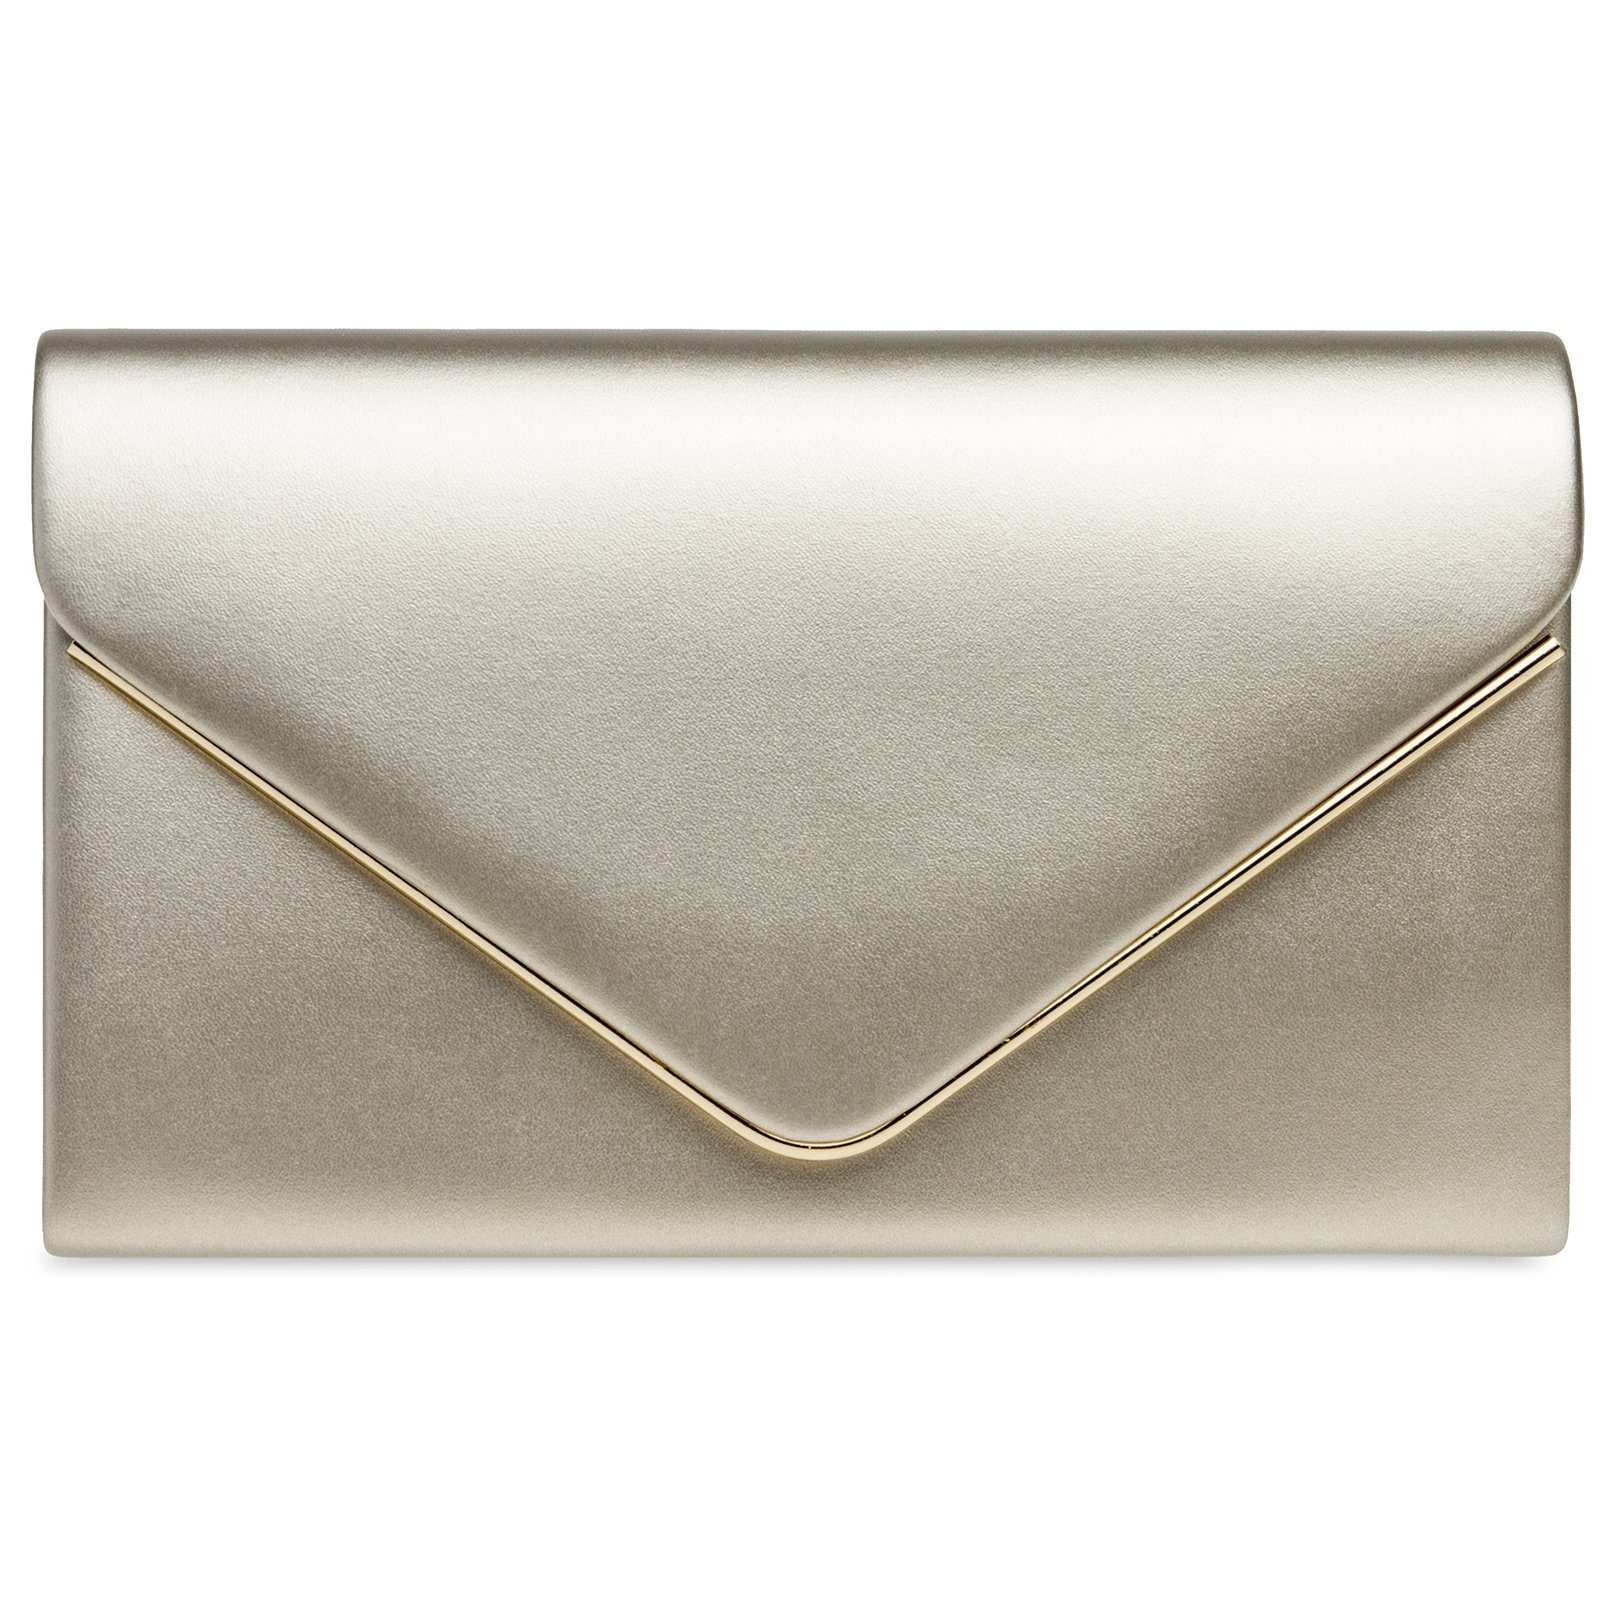 CASPAR TA413 Damen Briefumschlag Clutch Tasche Abendtasche Glanz elegant 